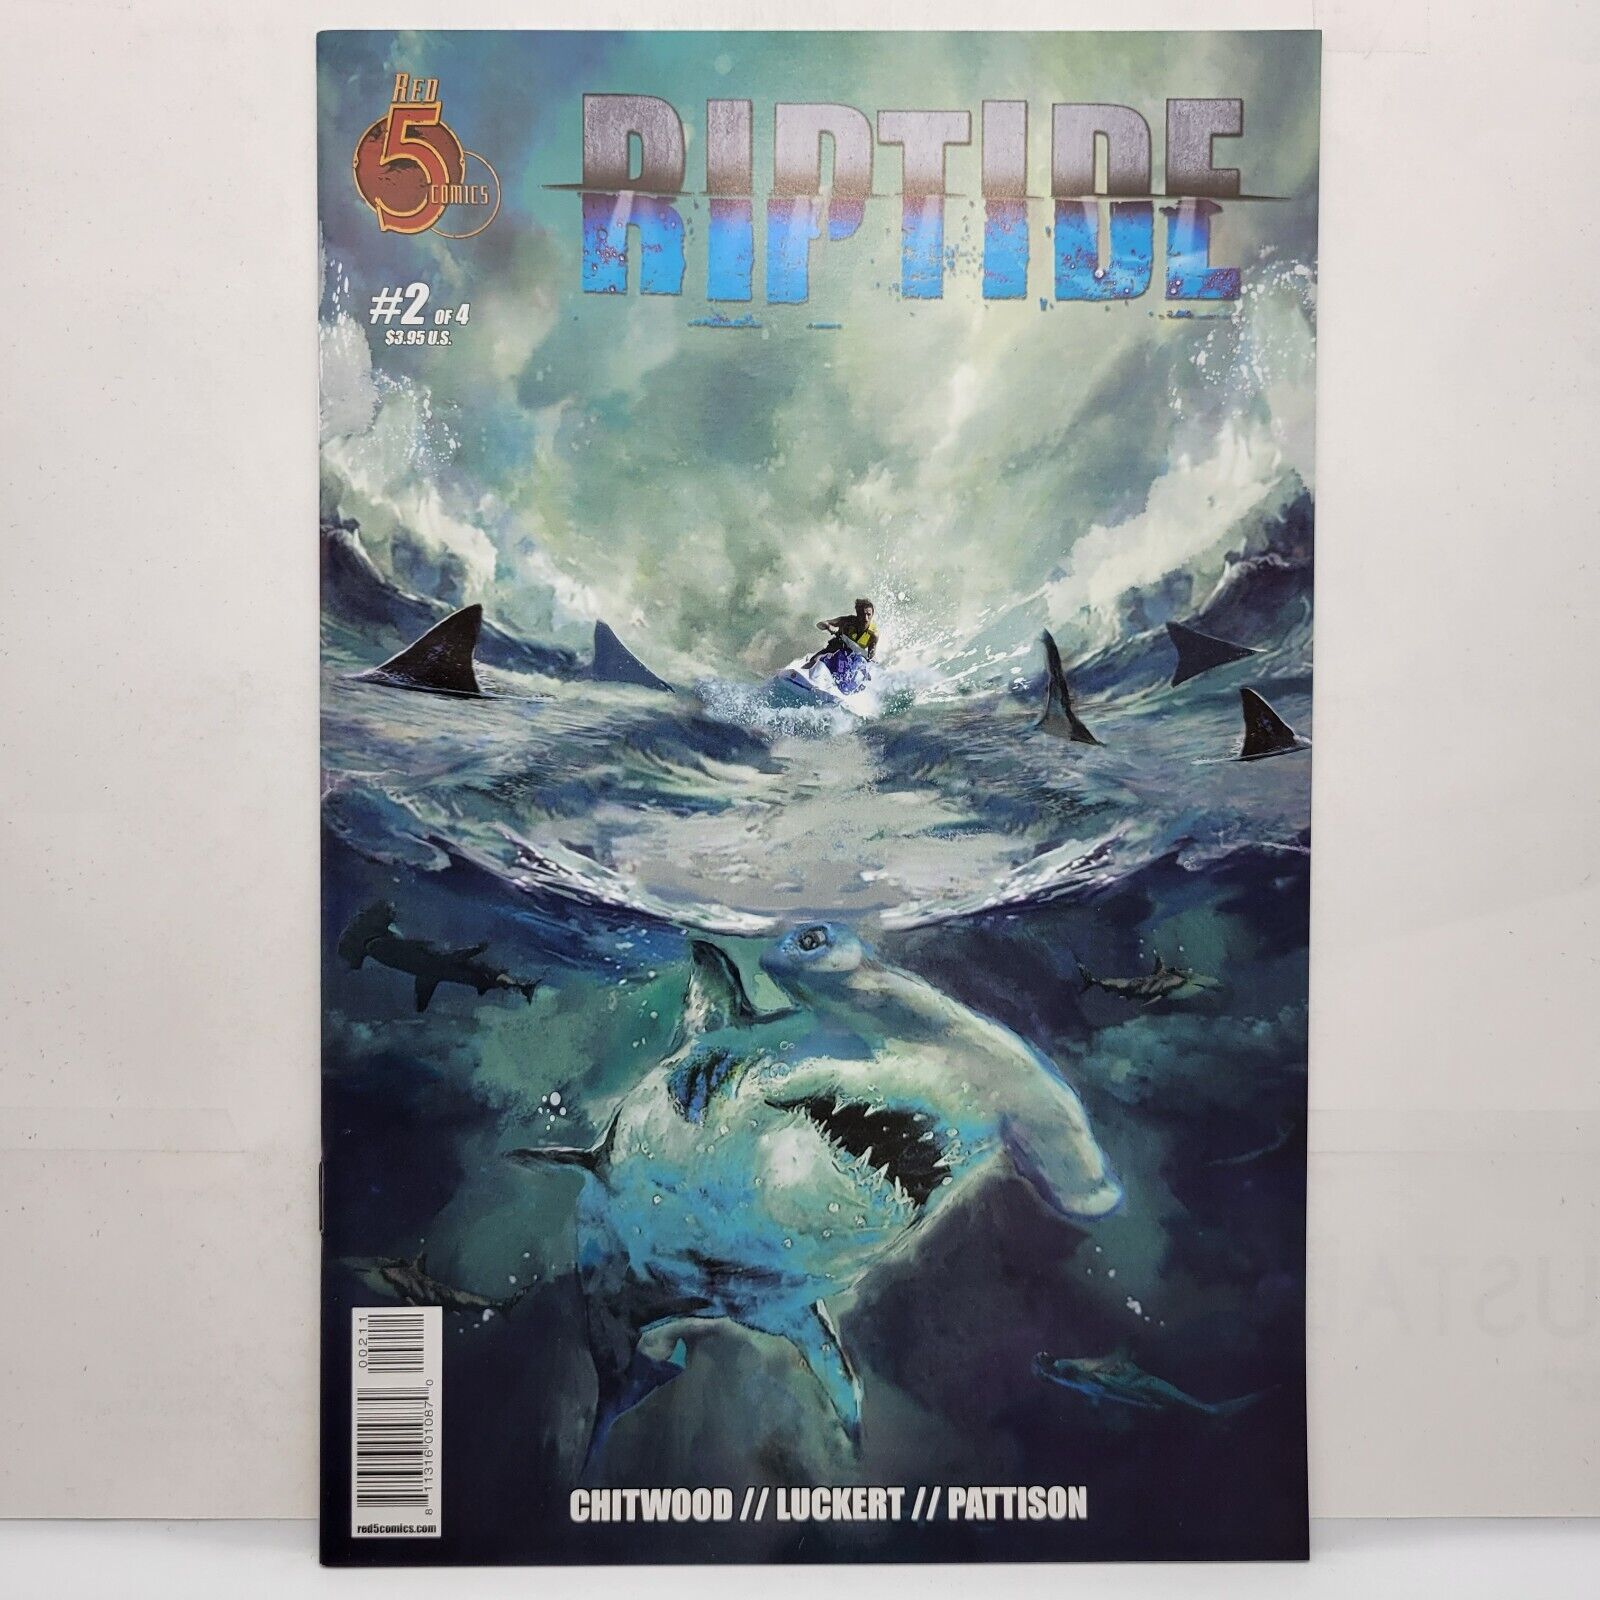 Riptide (Red 5 Comics) #2 1st Print 2018